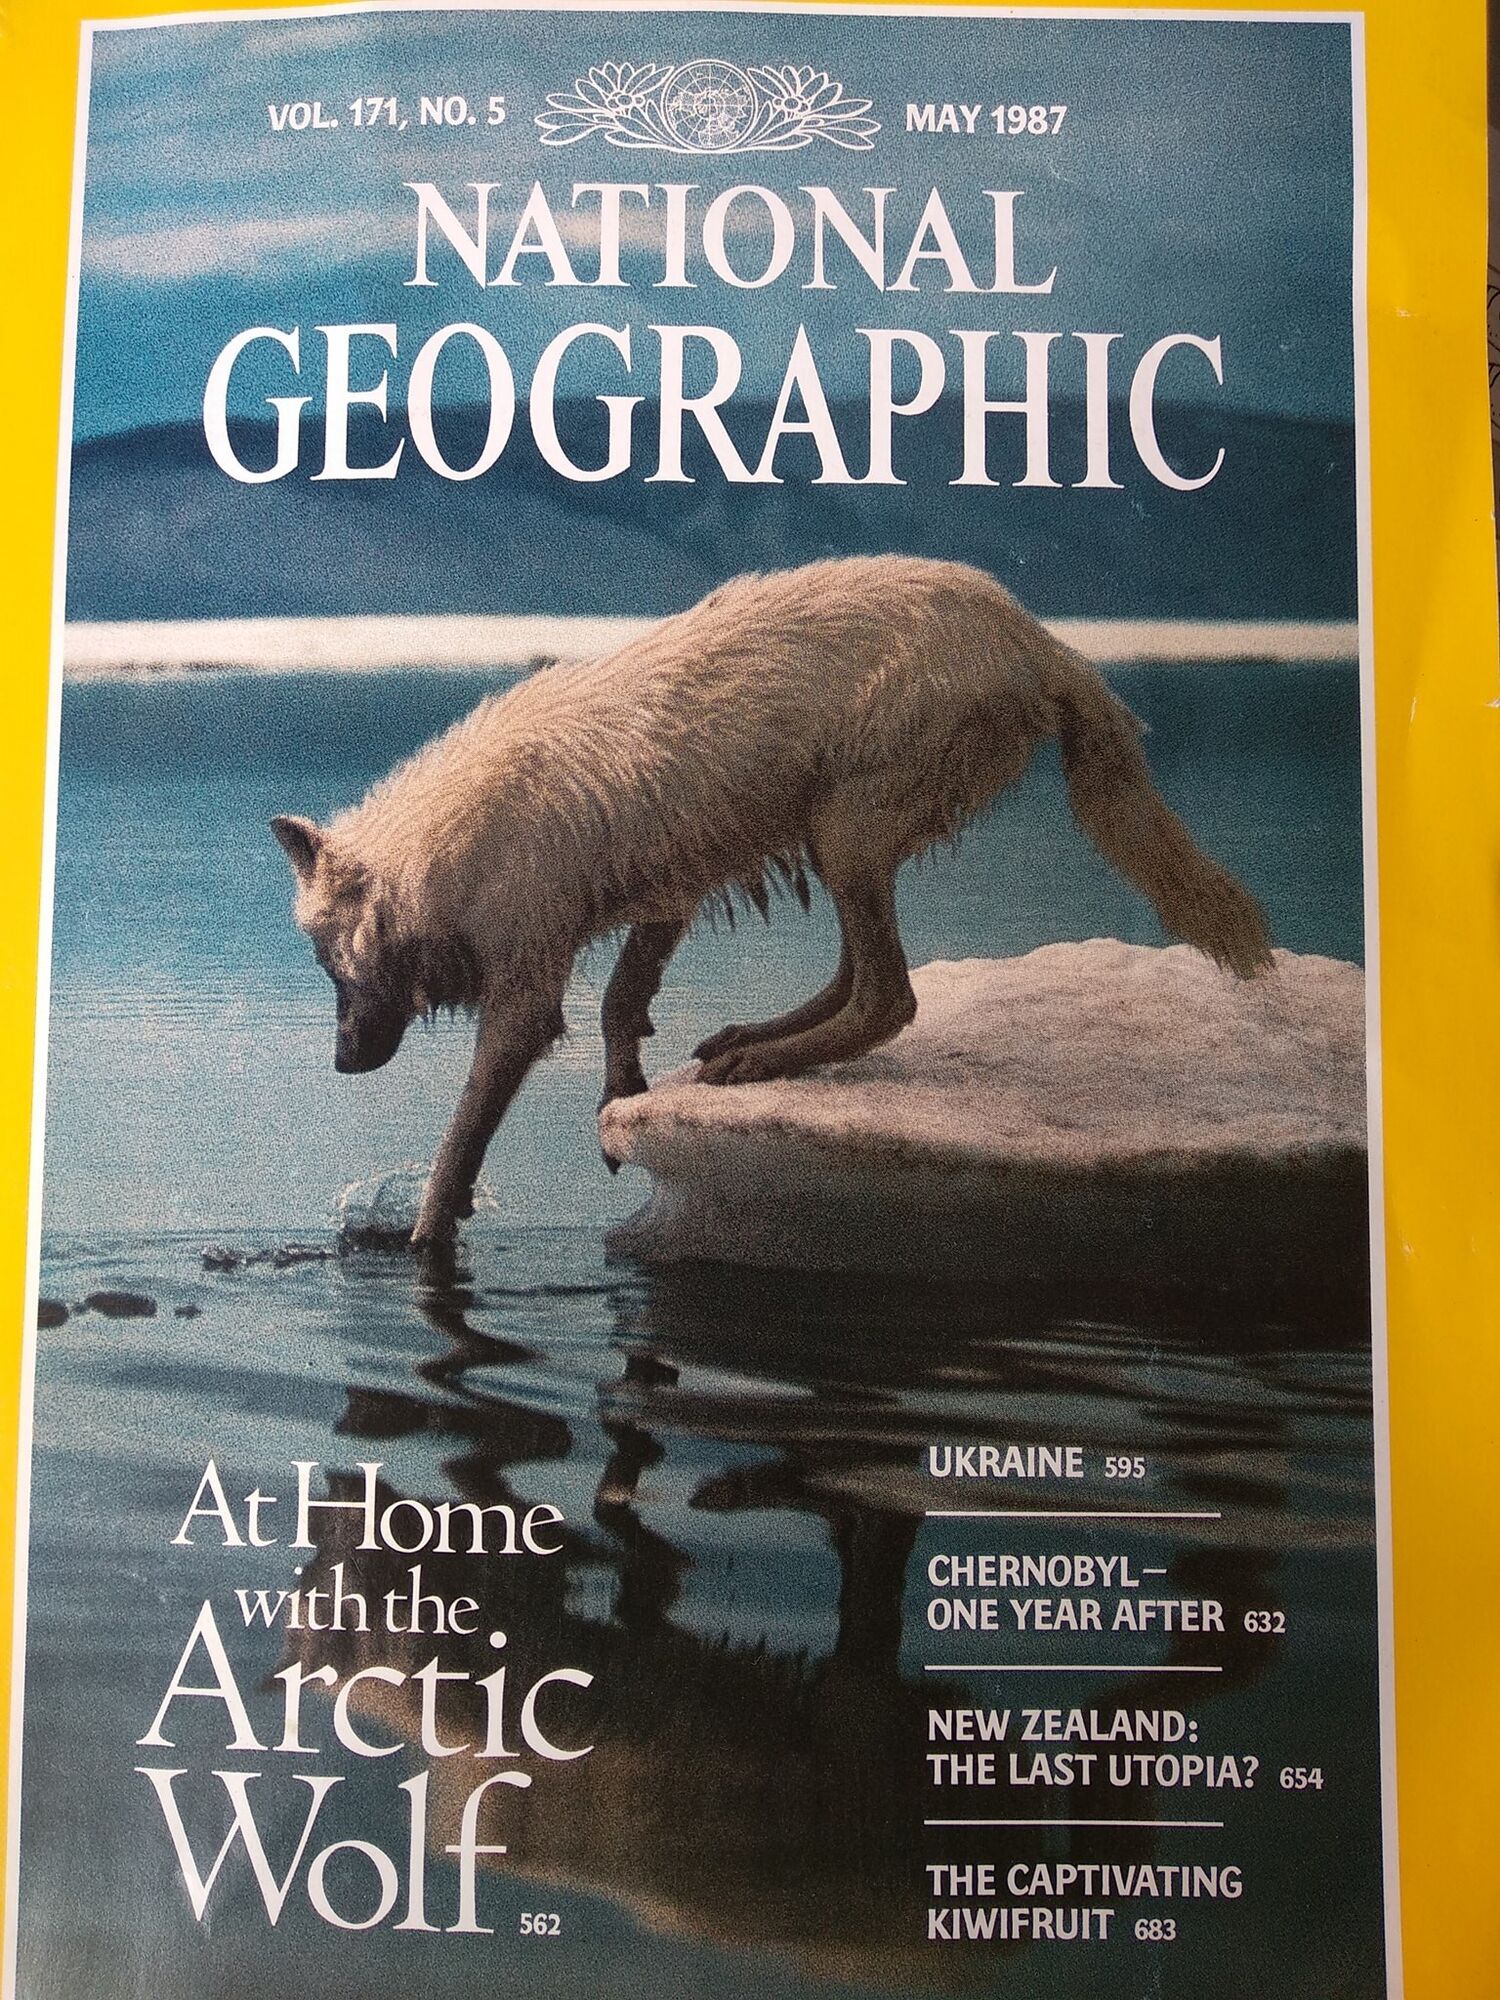 В сети вспомнили уникальный репортаж National Geographic из Украины. Яркие фото